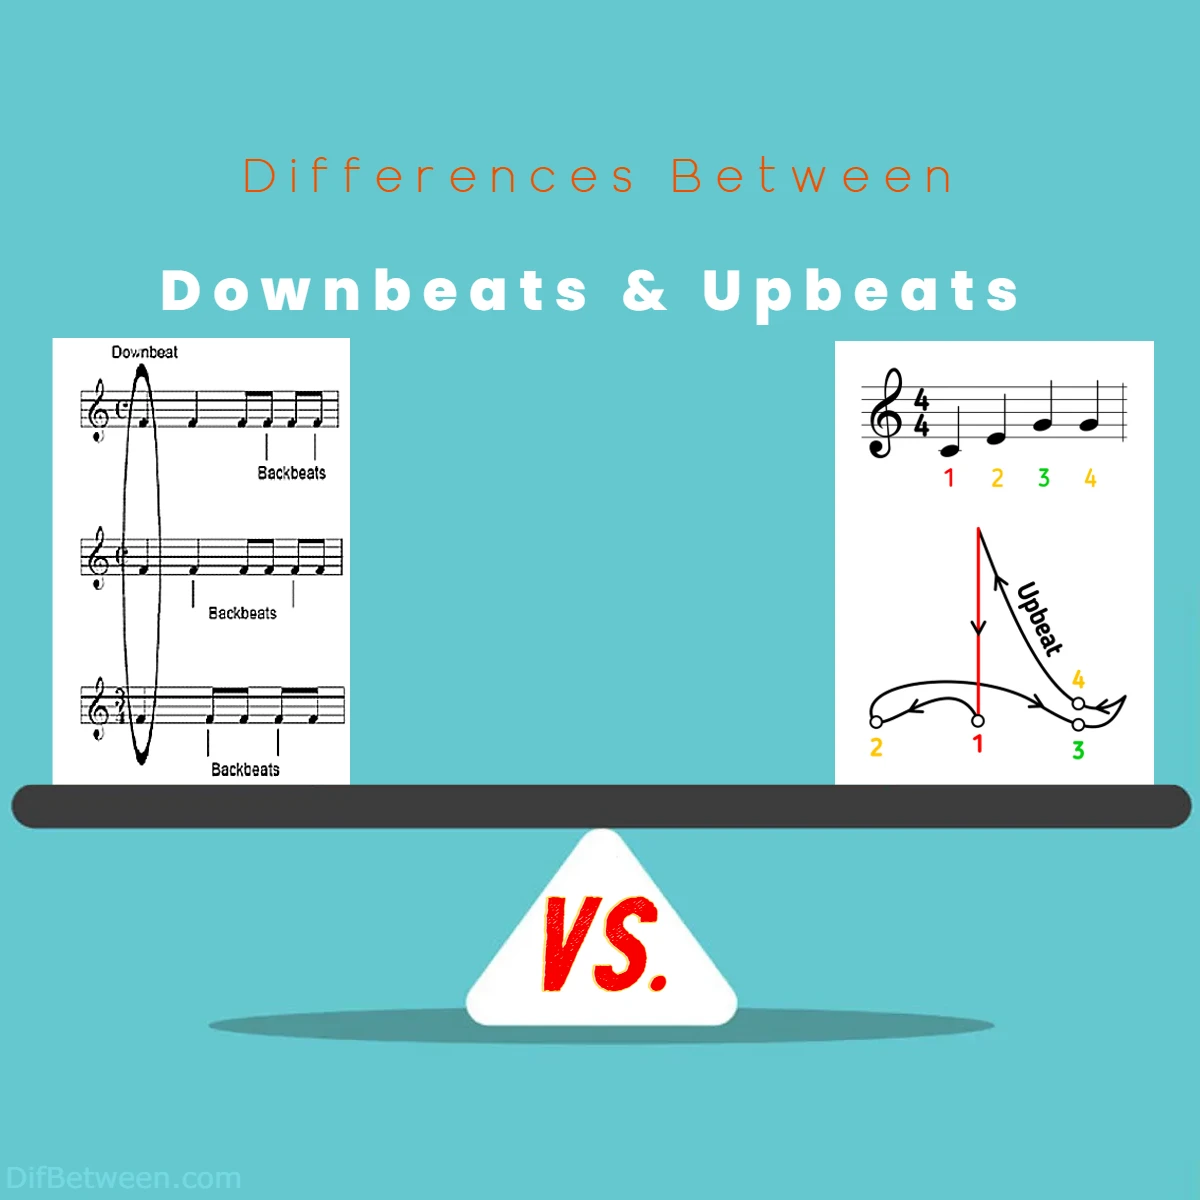 Differences Between Downbeats vs Upbeats